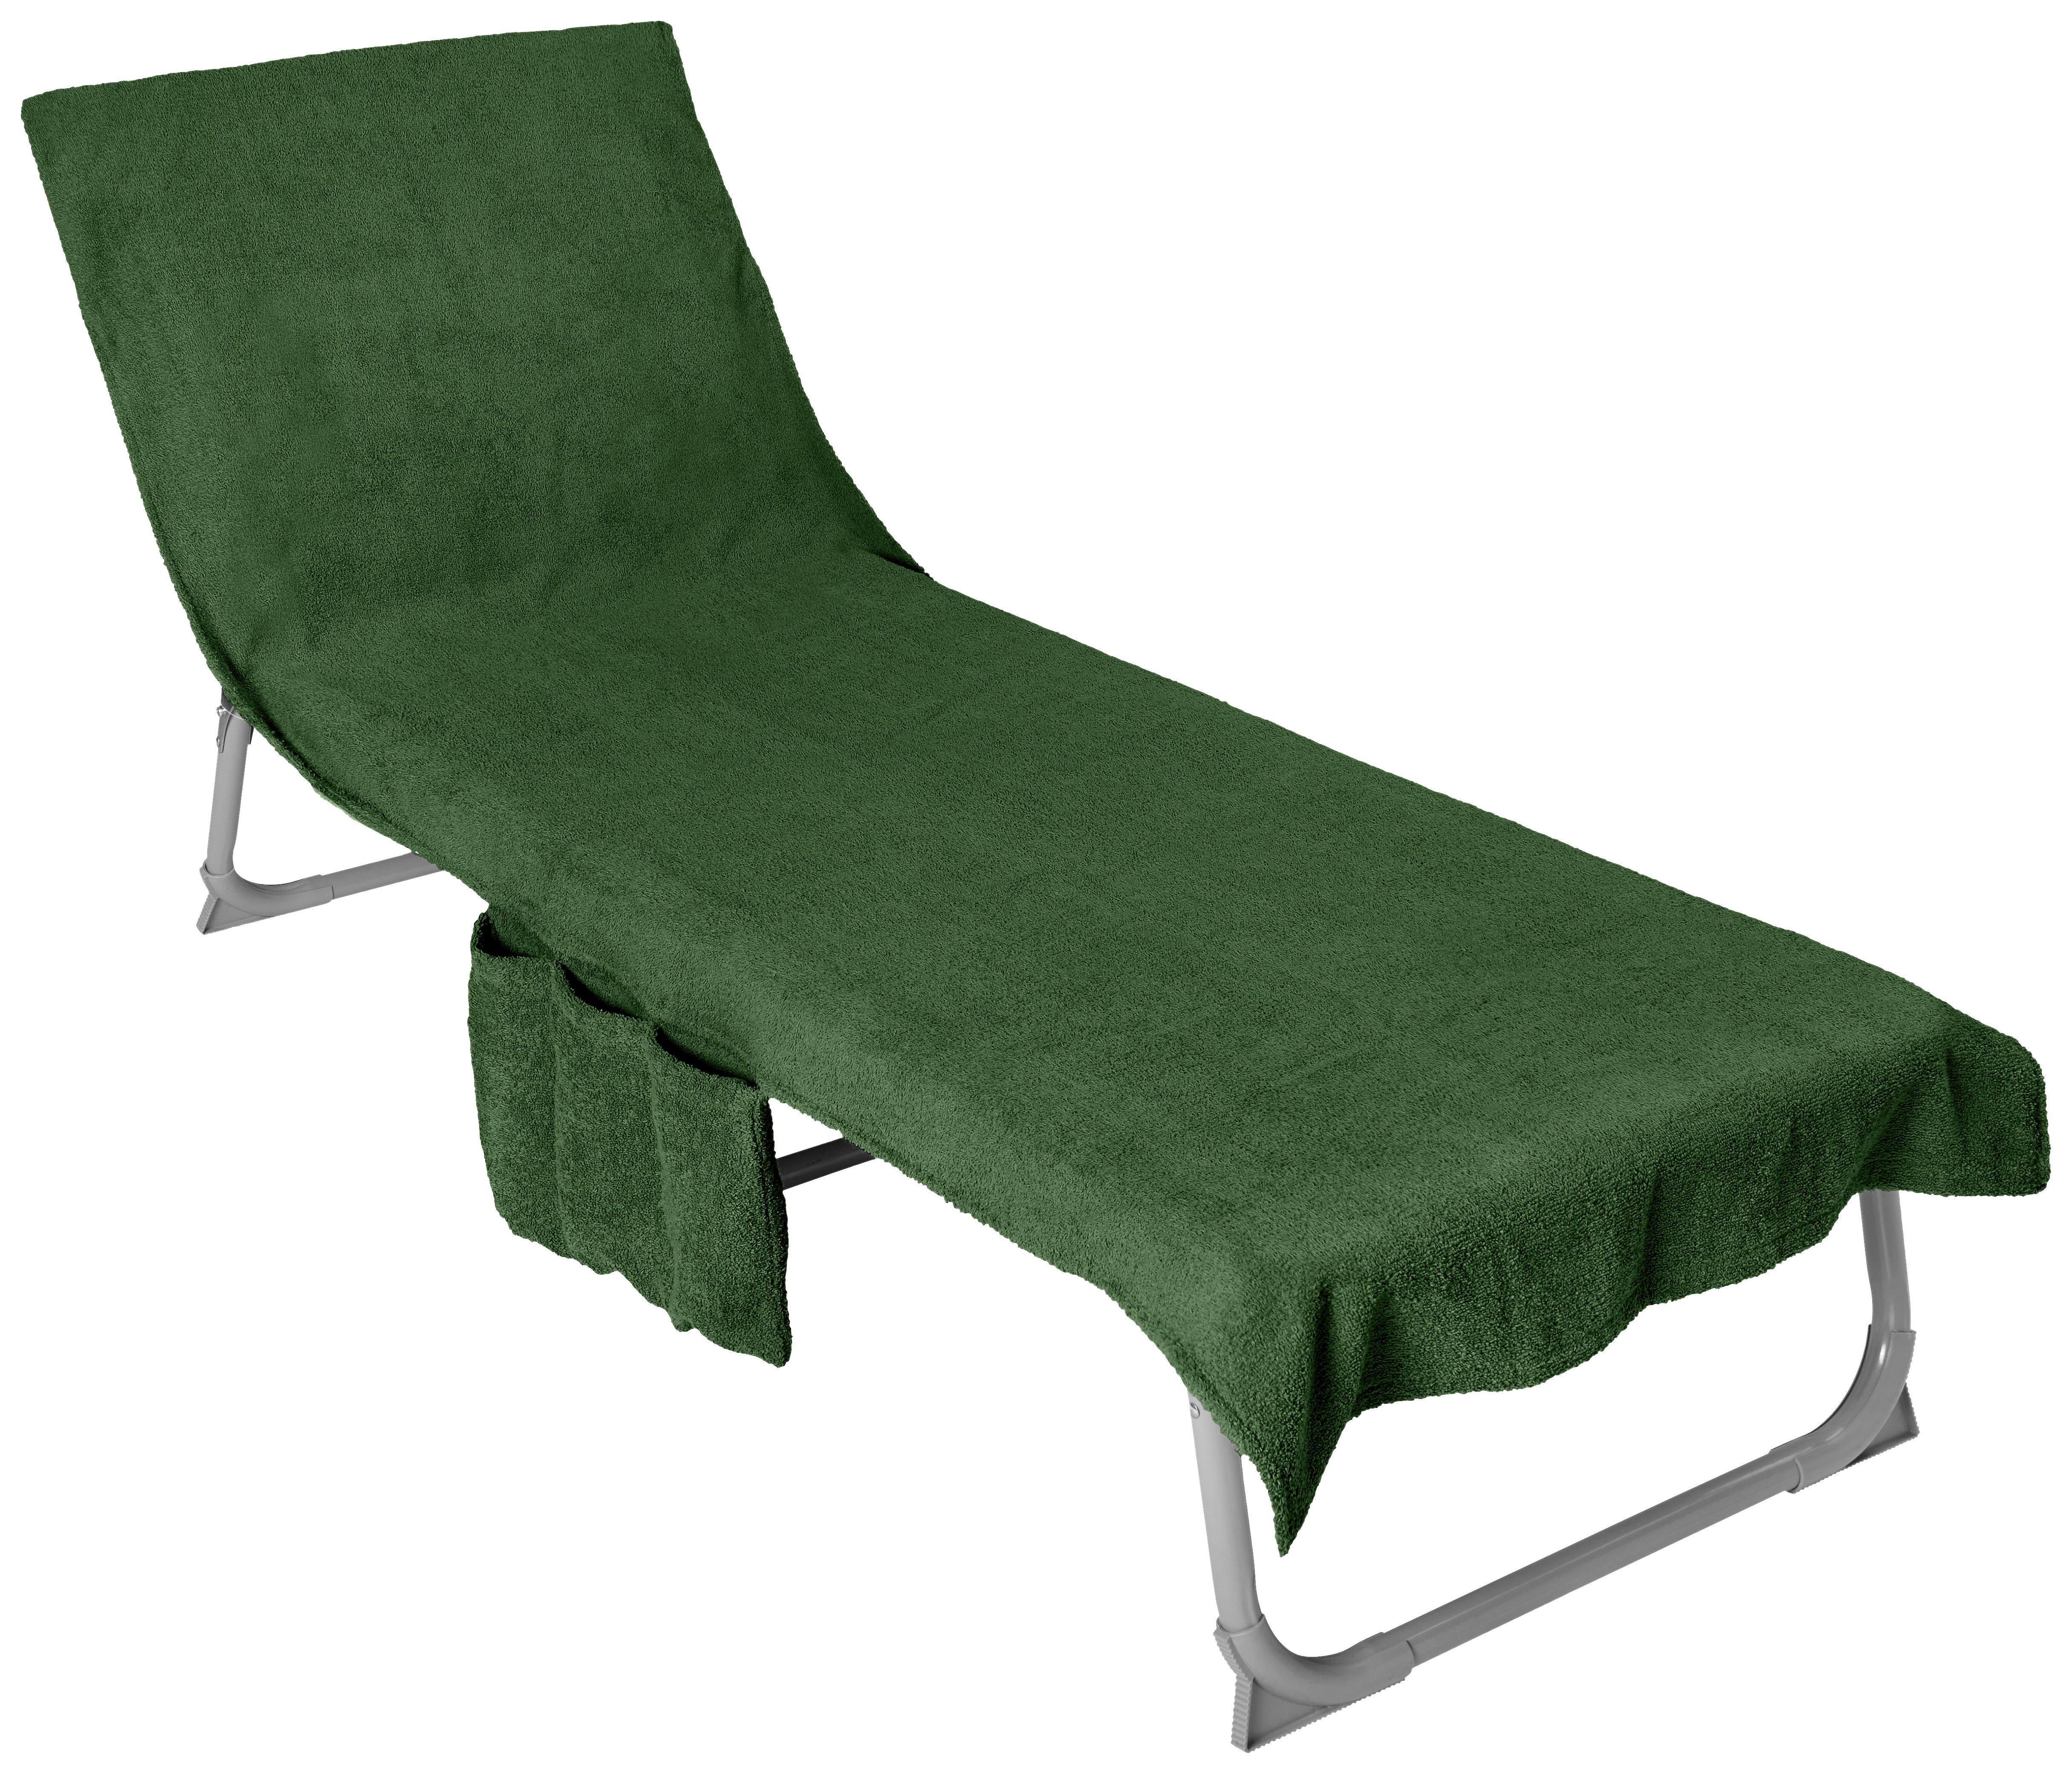 NAPOZÓÁGYPÁRNA zöld egyszínű  - zöld, Konventionell, textil (70/200cm) - Esposa